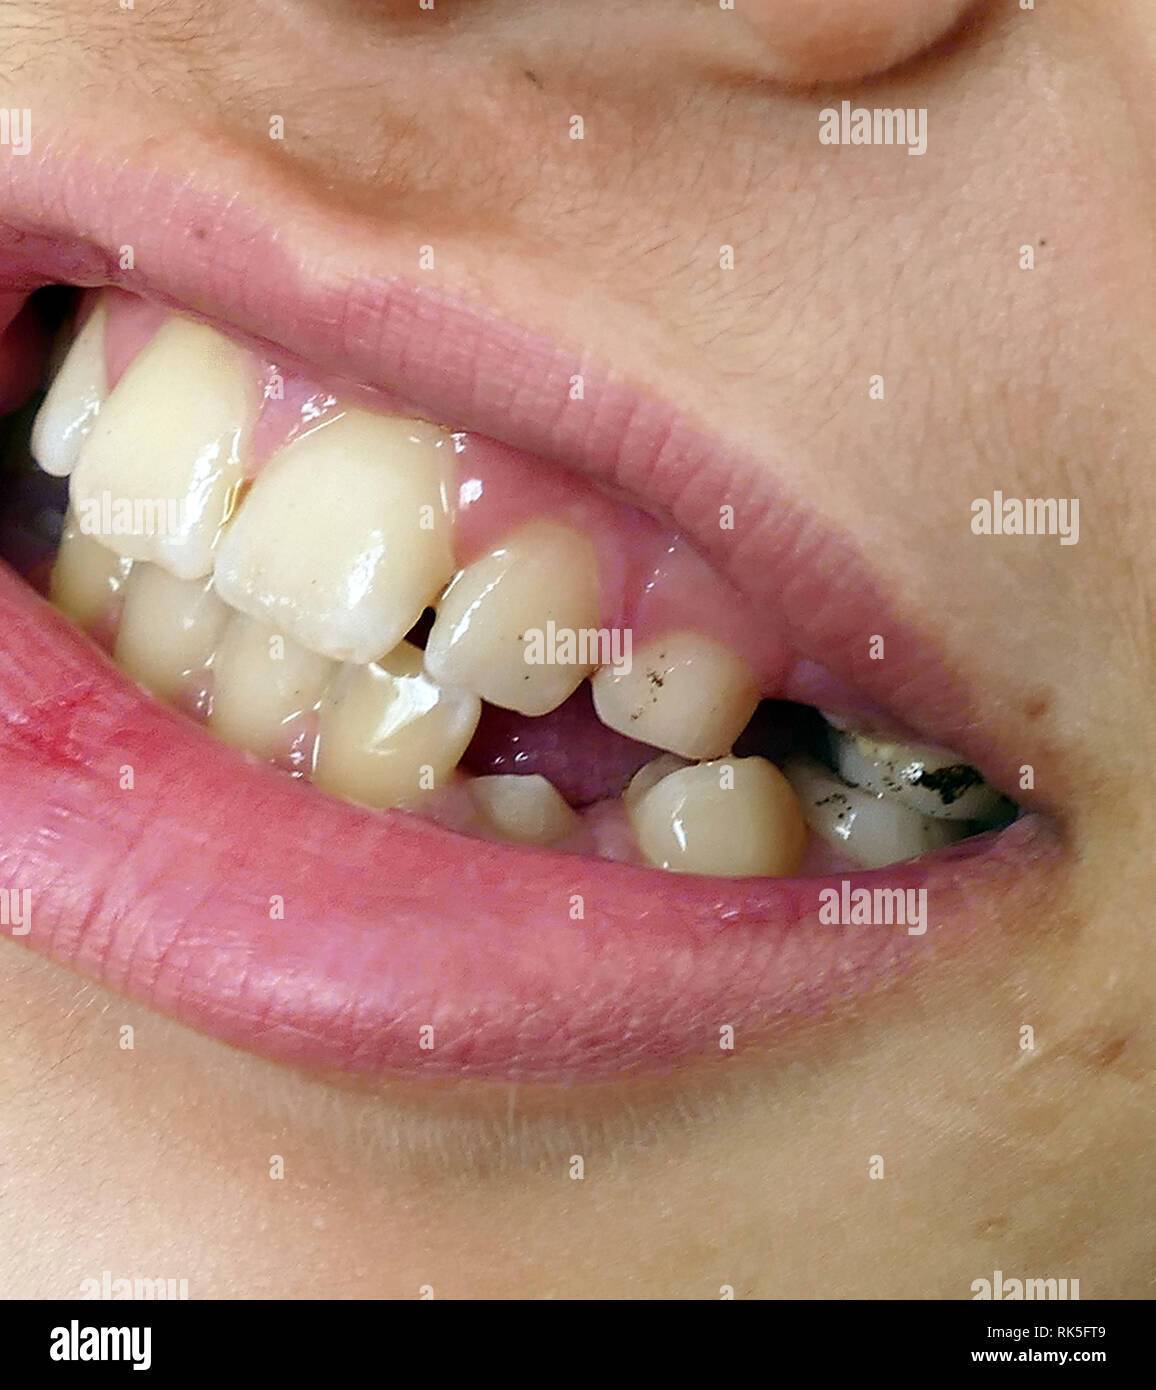 Orale e salute dentale, tartaro e macchie nere sui denti Foto stock - Alamy